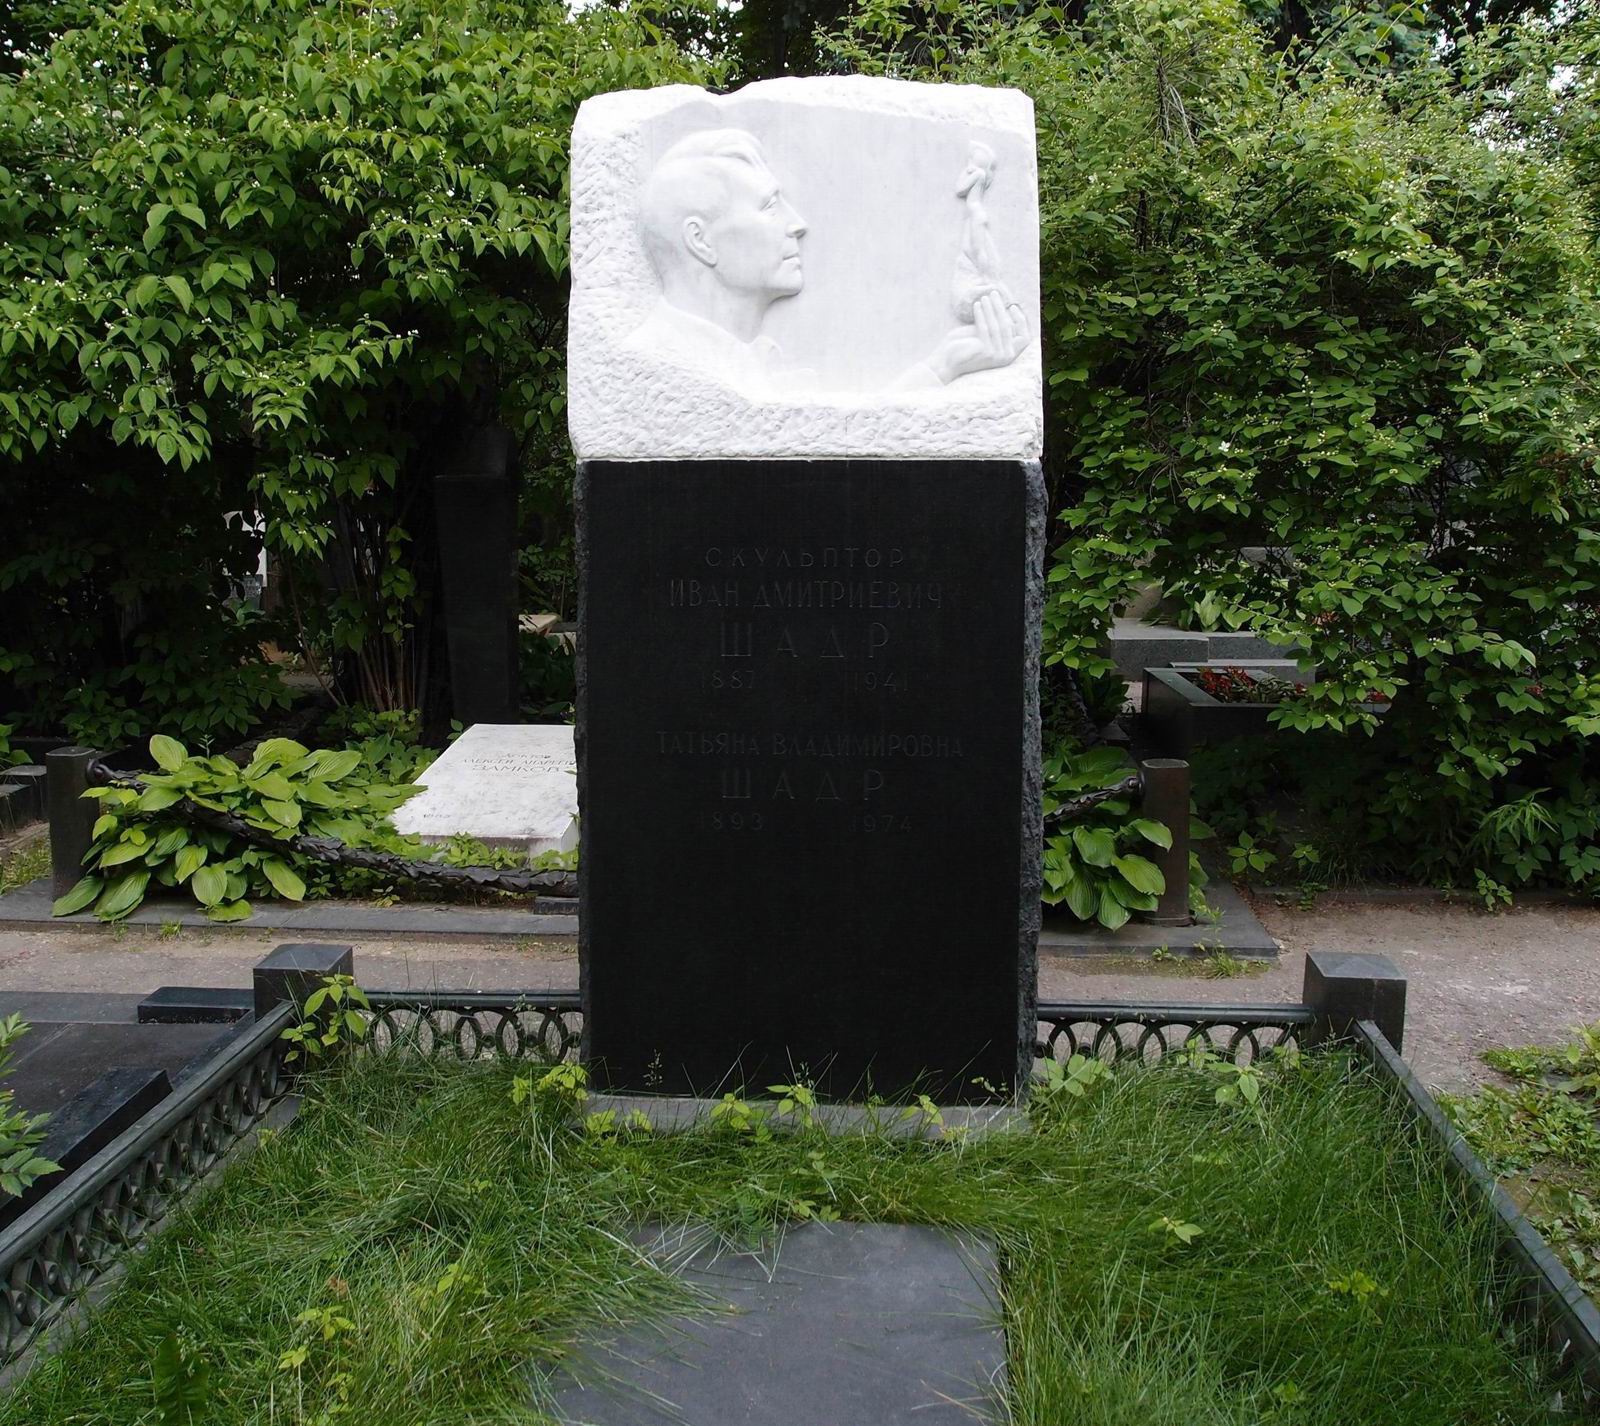 Памятник на могиле Шадра И.Д. (1887–1941), ск. И.Рабинович, арх. Г.Гольц, А.Заварзин, на Новодевичьем кладбище (2–26–15). Нажмите левую кнопку мыши чтобы увидеть фрагмент памятника.